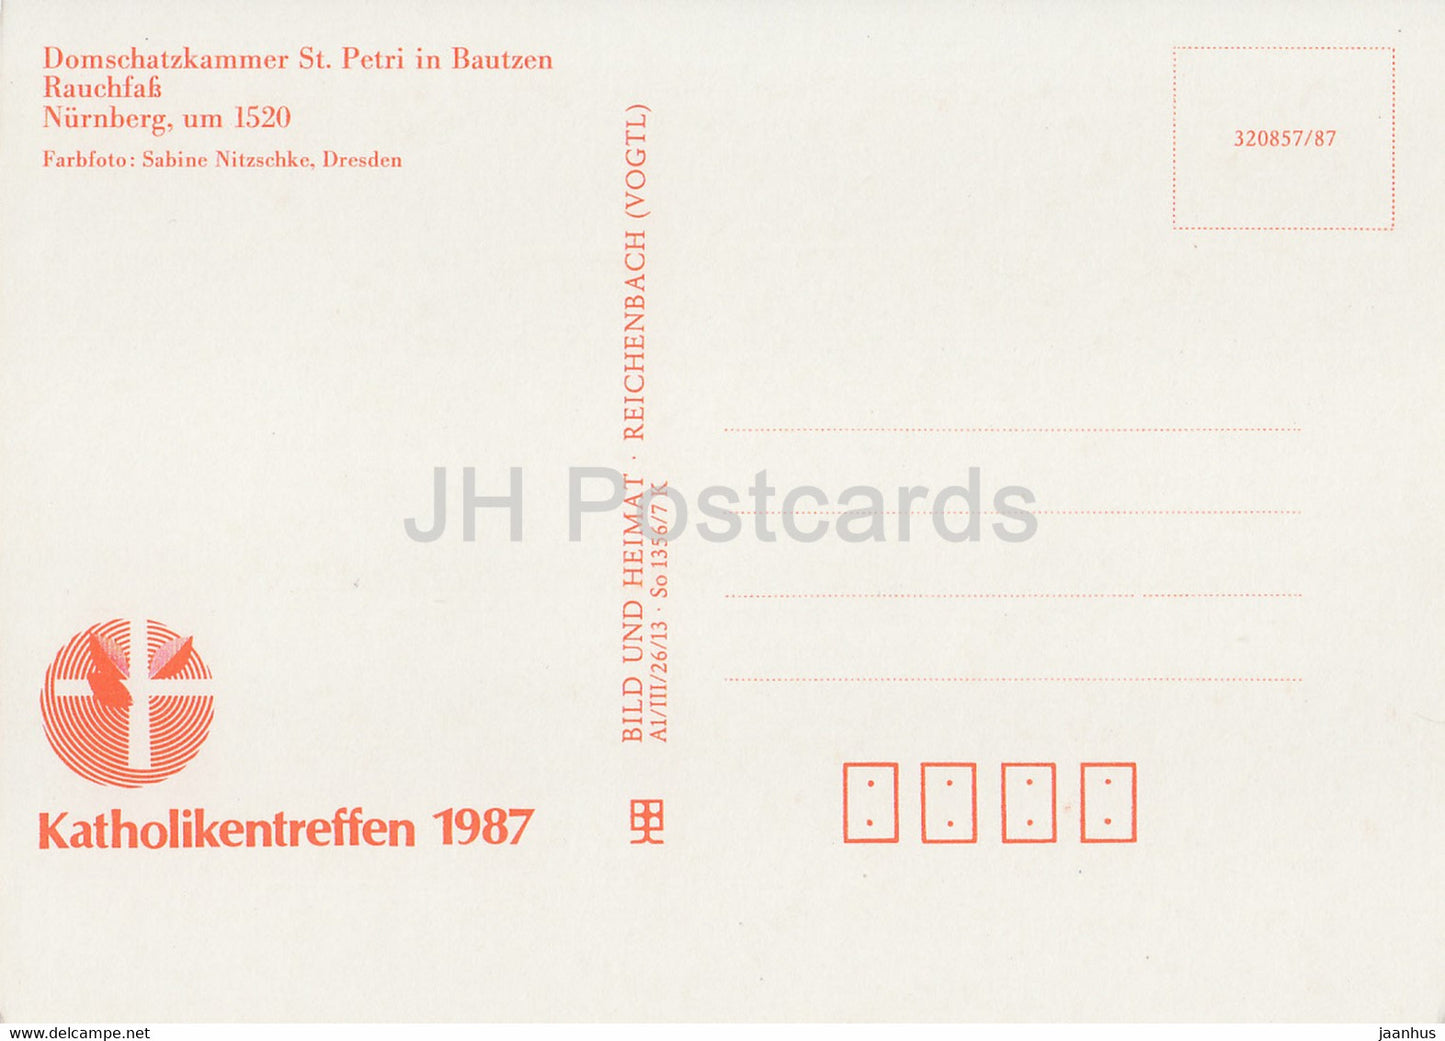 Rauchfass - Domschatzkammer St. Petri in Bautzen - 1987 - DDR Deutschland - unbenutzt